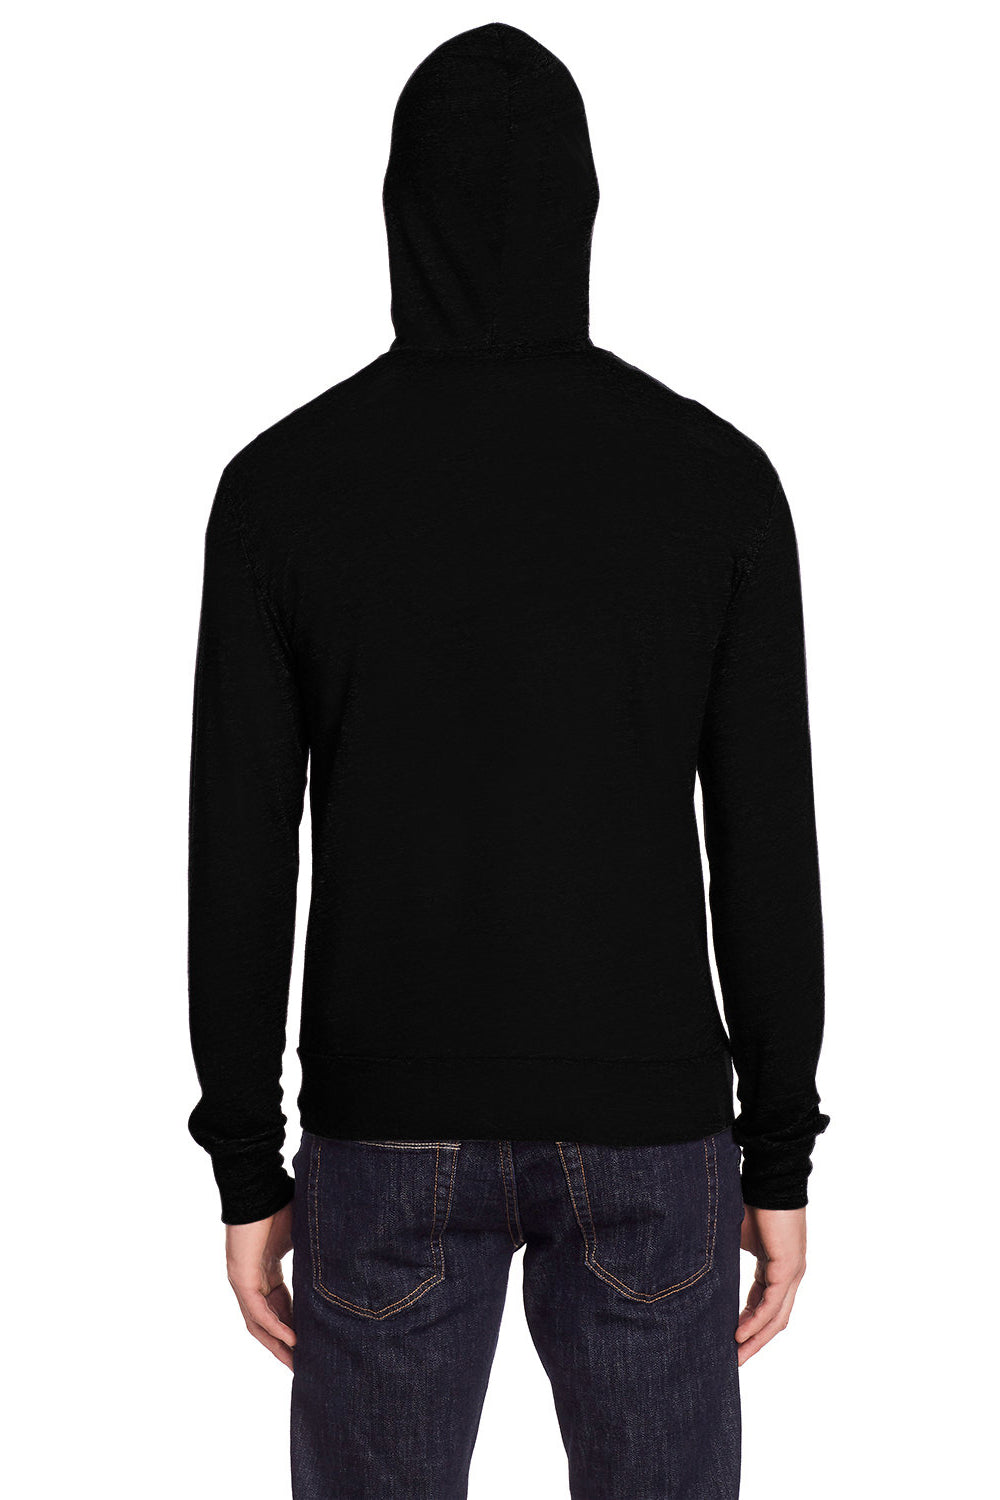 Threadfast Apparel 302Z Mens Full Zip Hooded Sweatshirt Hoodie Solid Black Back